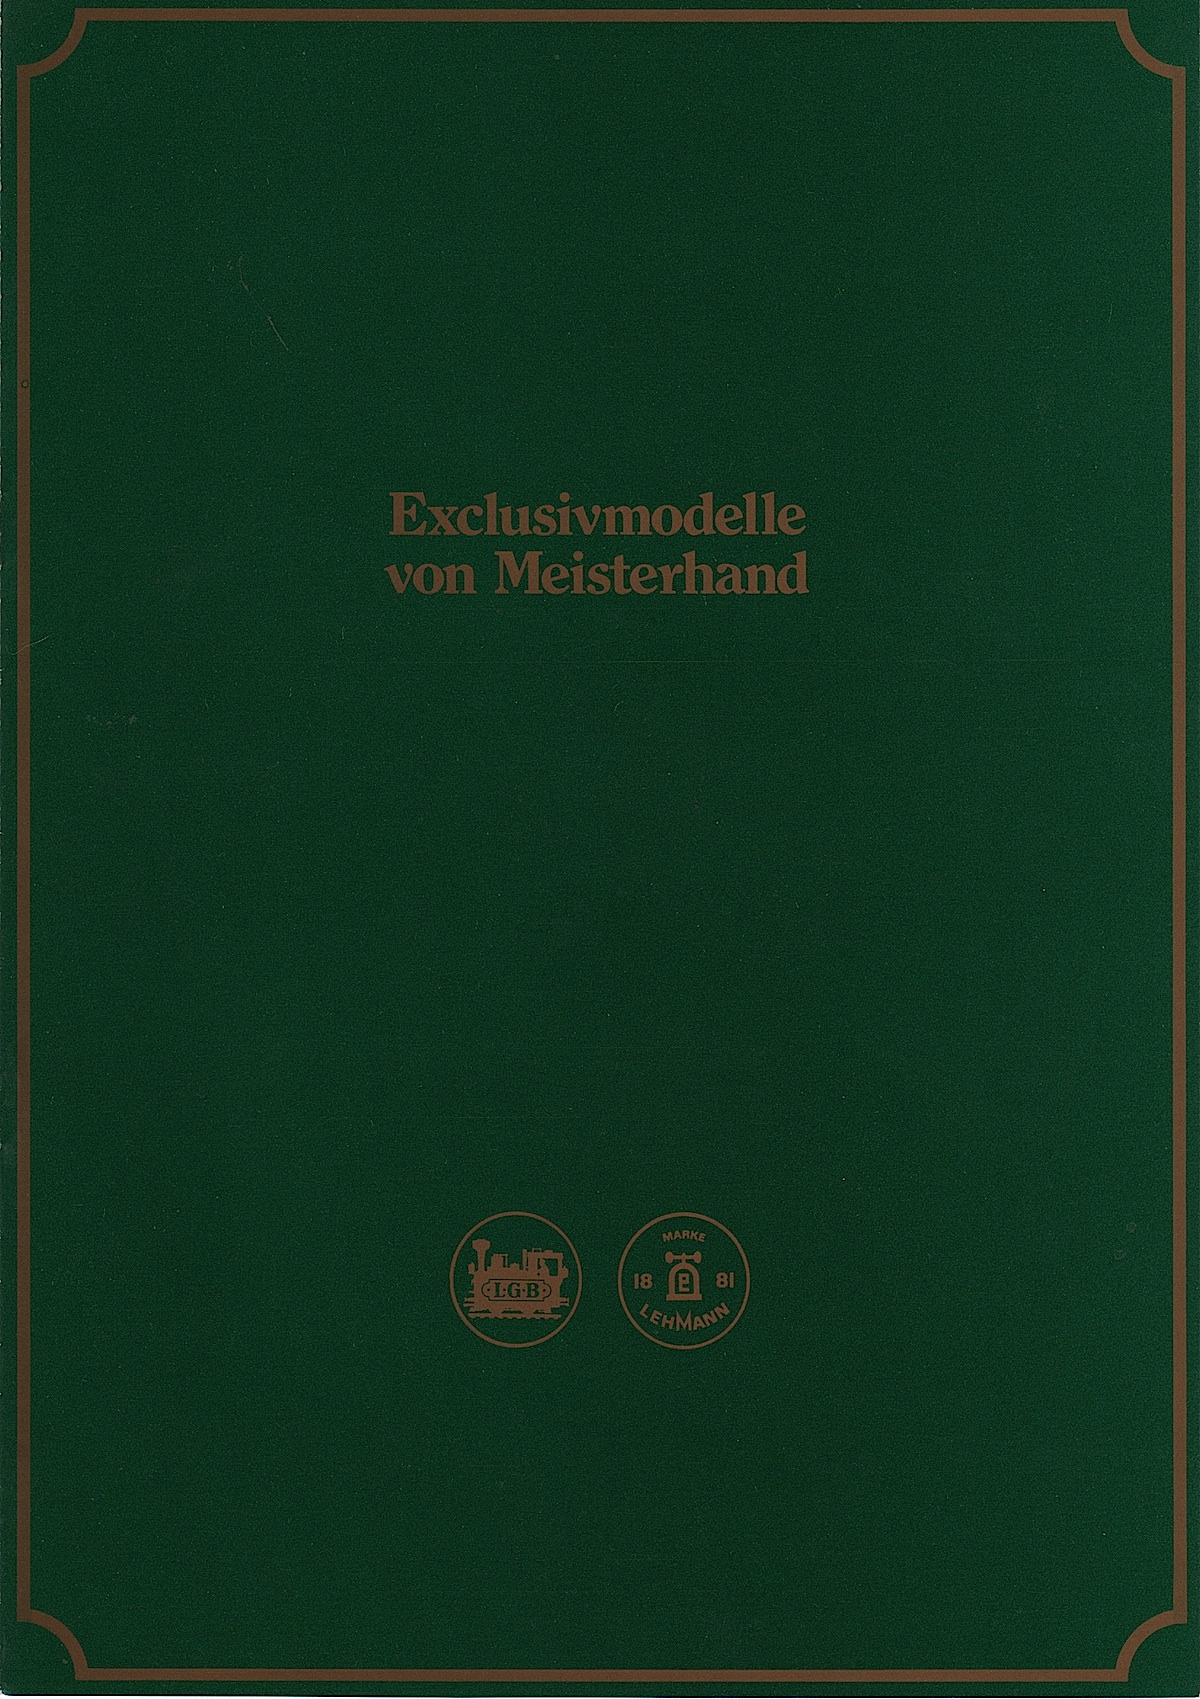 LGB Magnus Katalog (Catalogue) 1981